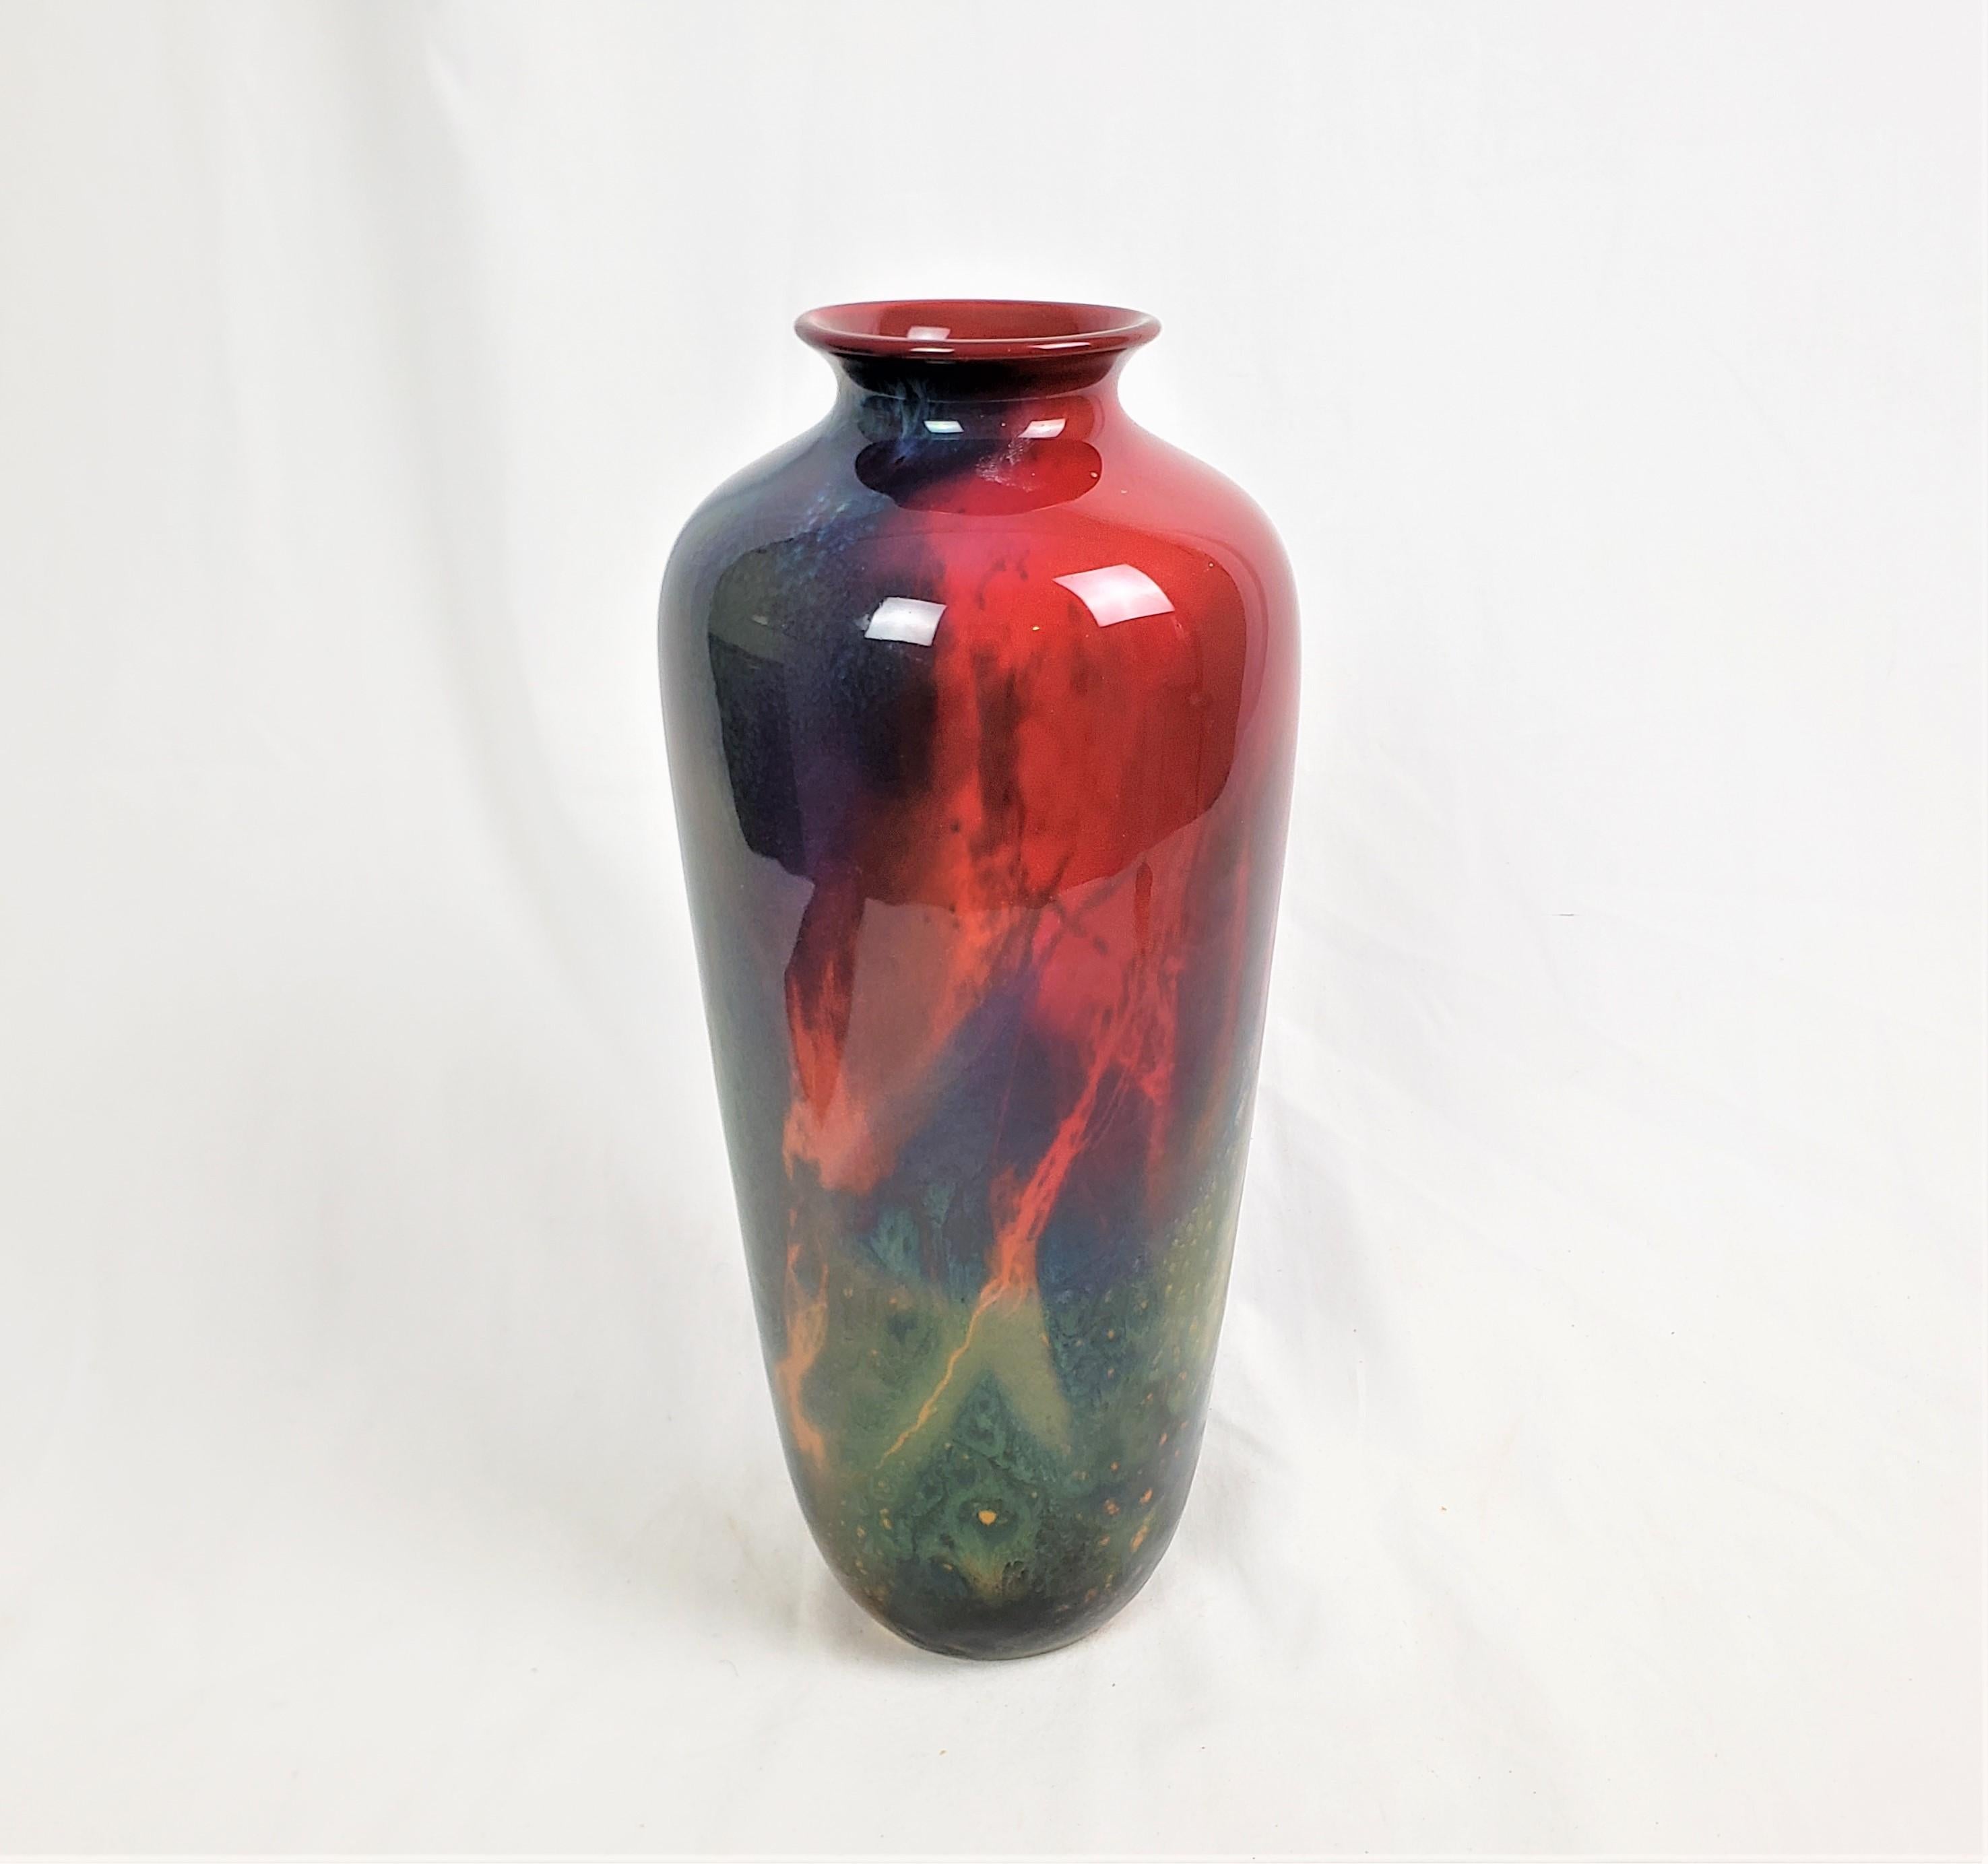 Ce vase antique a été fabriqué par la célèbre usine anglaise Royal Doulton vers 1920 dans le style Art déco. Ce grand vase a été conçu et fabriqué par l'artiste Noke Sung à l'aide de la glaçure flambe, nouvellement mise au point et caractéristique